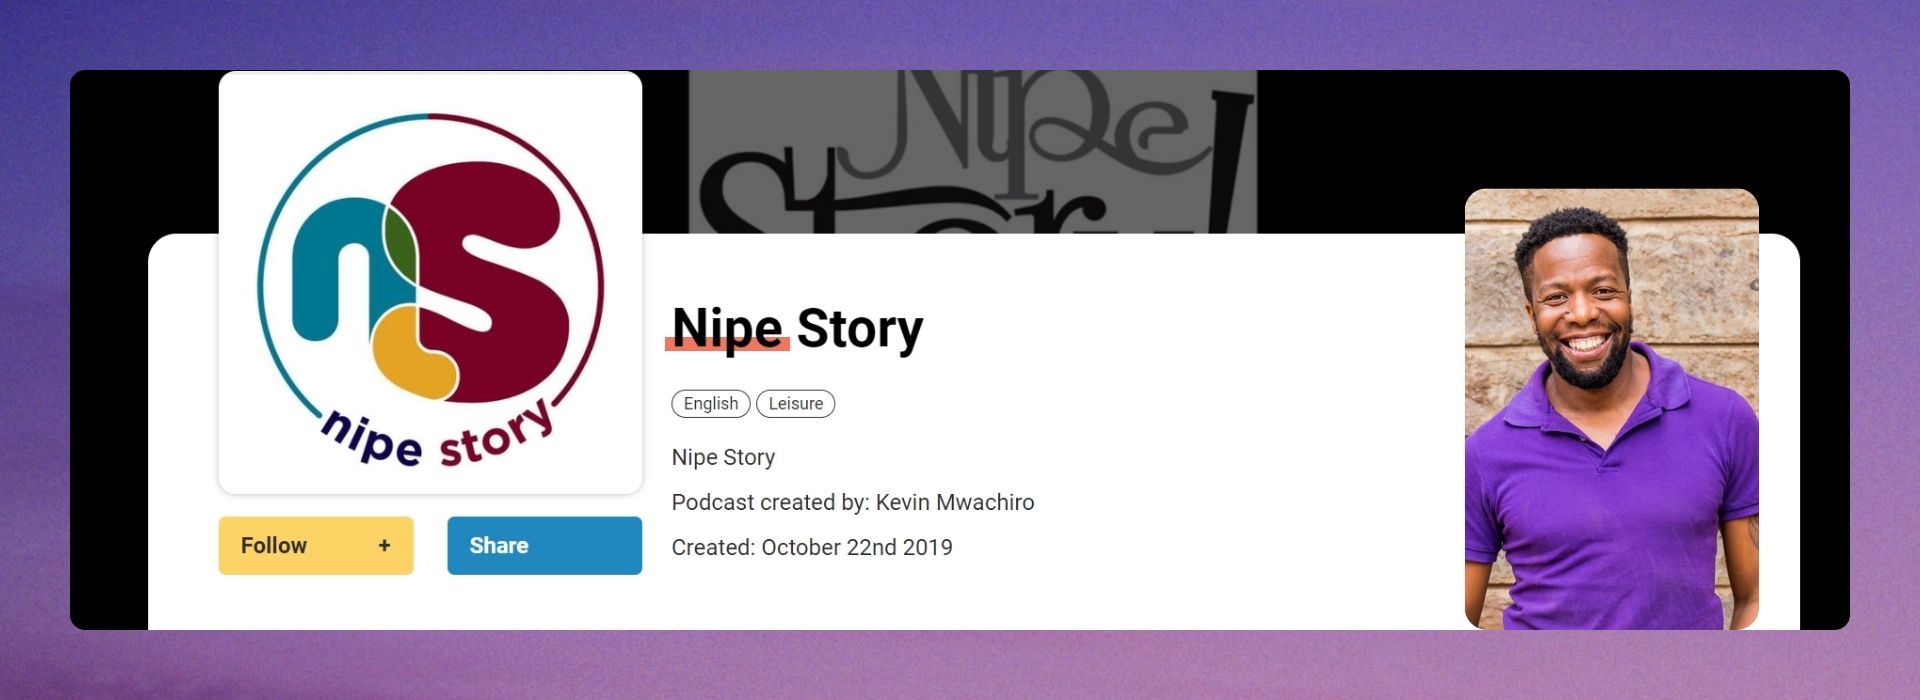 Nipe Story by Kevin Mwachiro